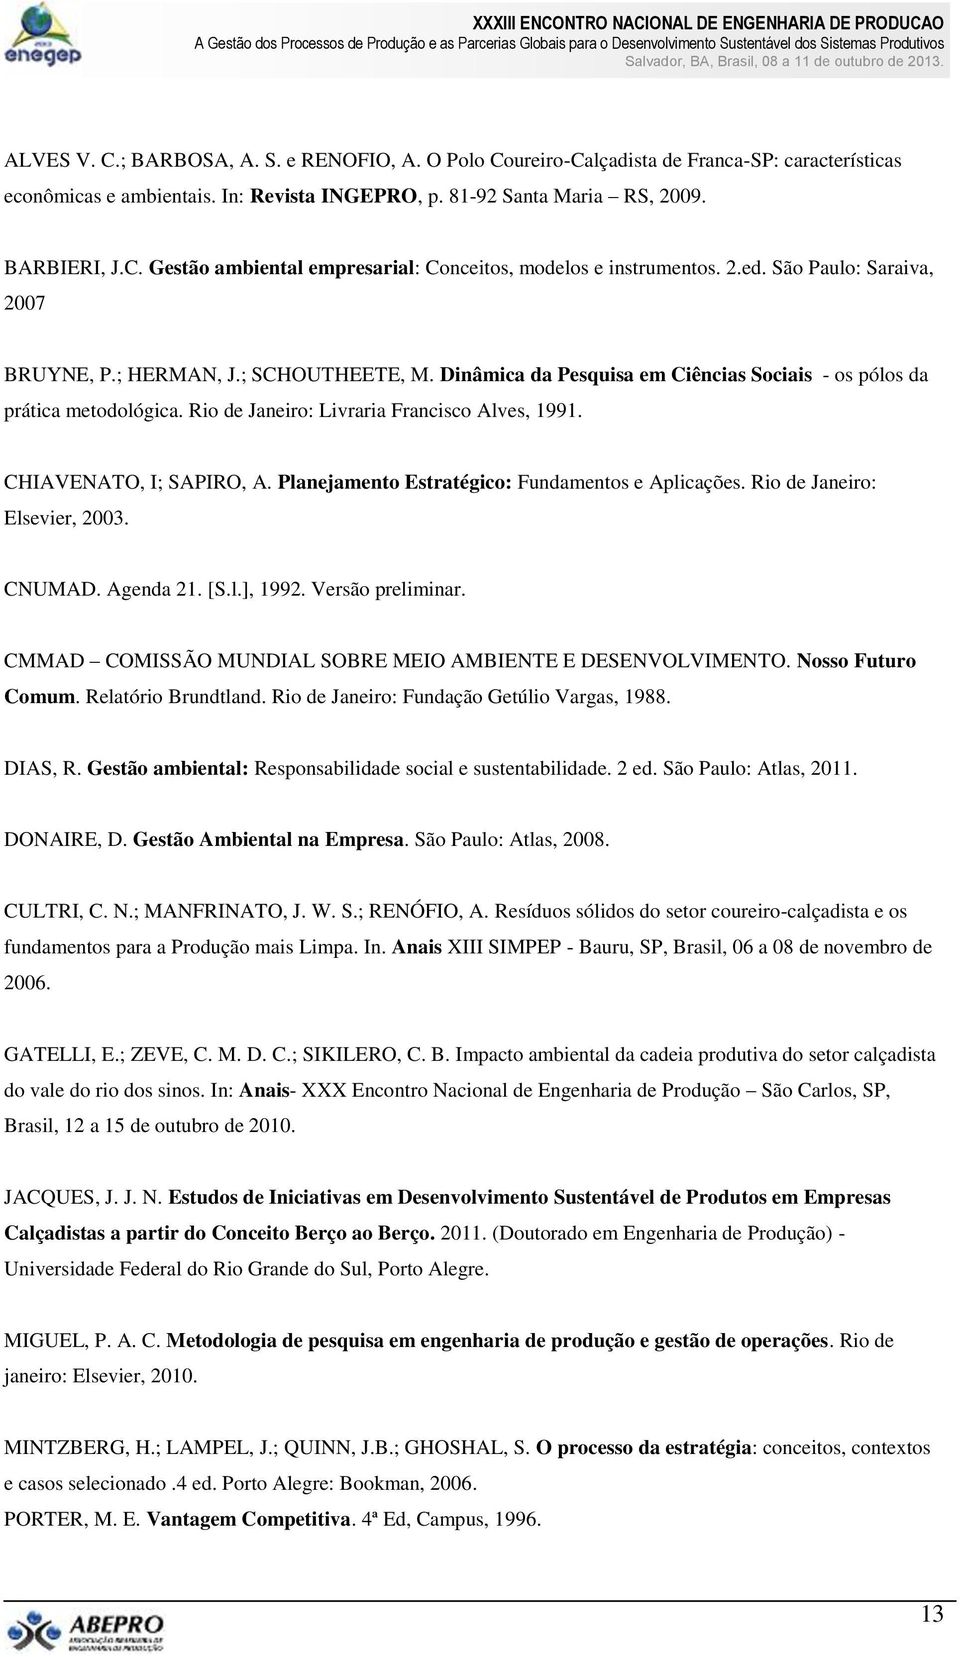 CHIAVENATO, I; SAPIRO, A. Planejamento Estratégico: Fundamentos e Aplicações. Rio de Janeiro: Elsevier, 2003. CNUMAD. Agenda 21. [S.l.], 1992. Versão preliminar.